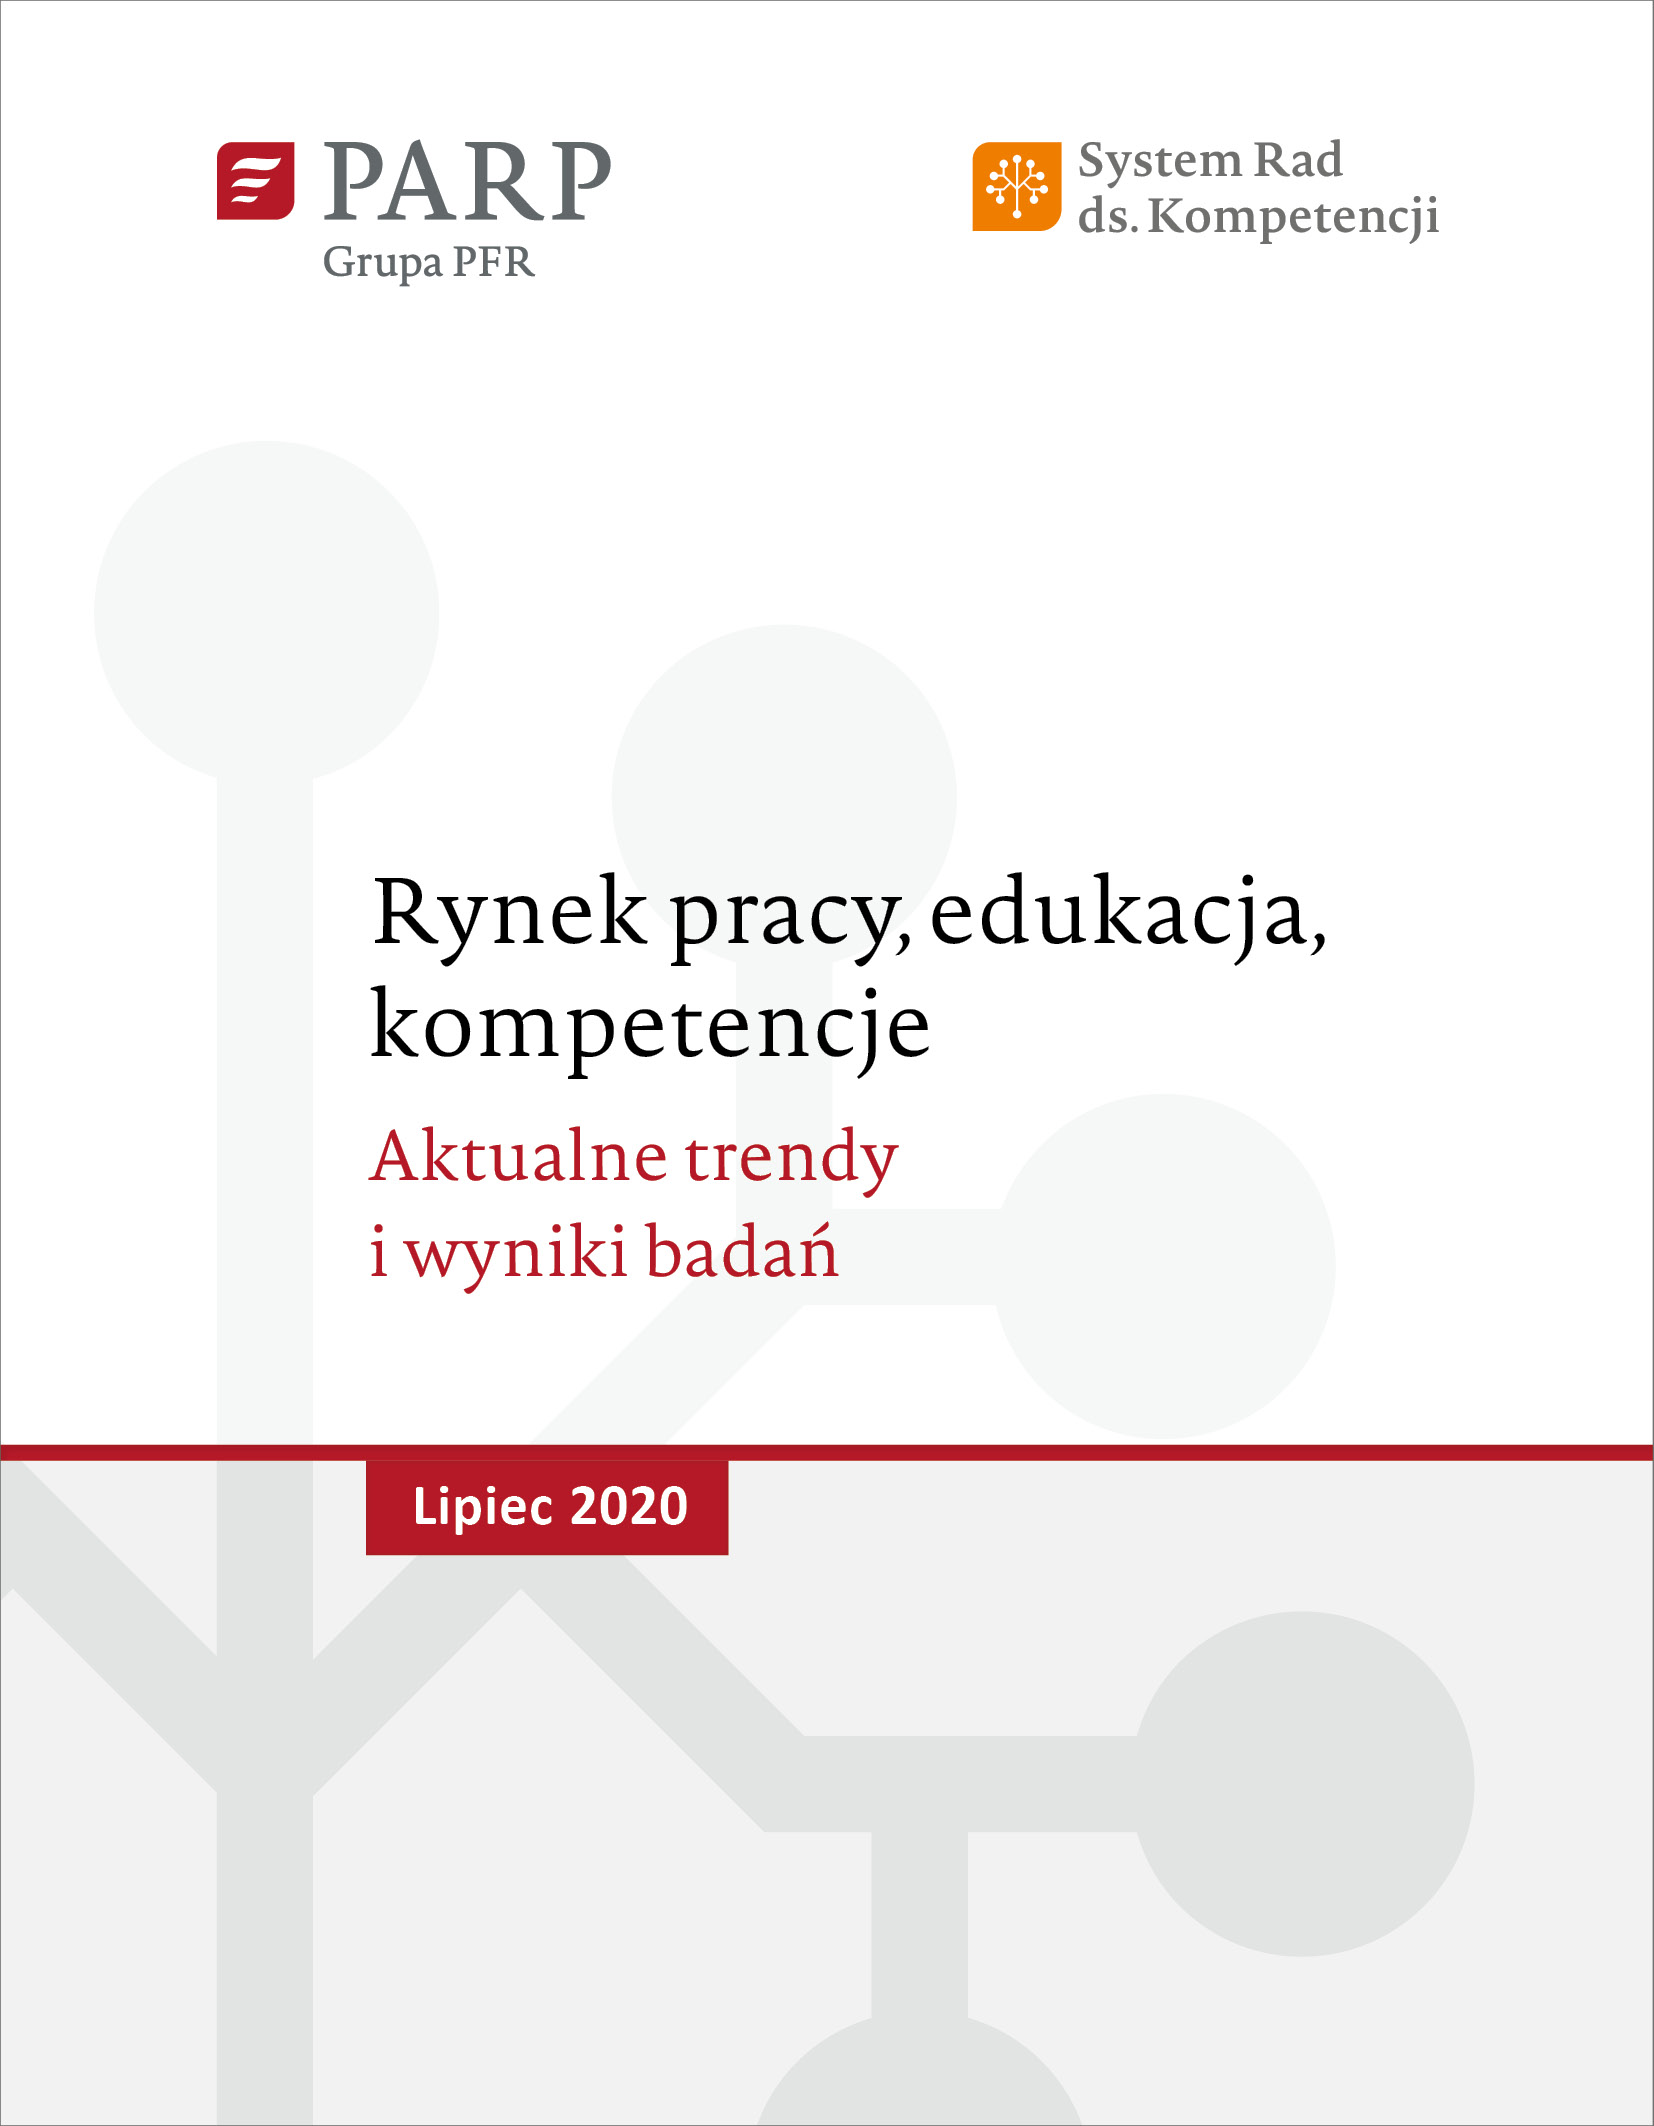 Rynek pracy, edukacja, kompetencje - lipiec 2020